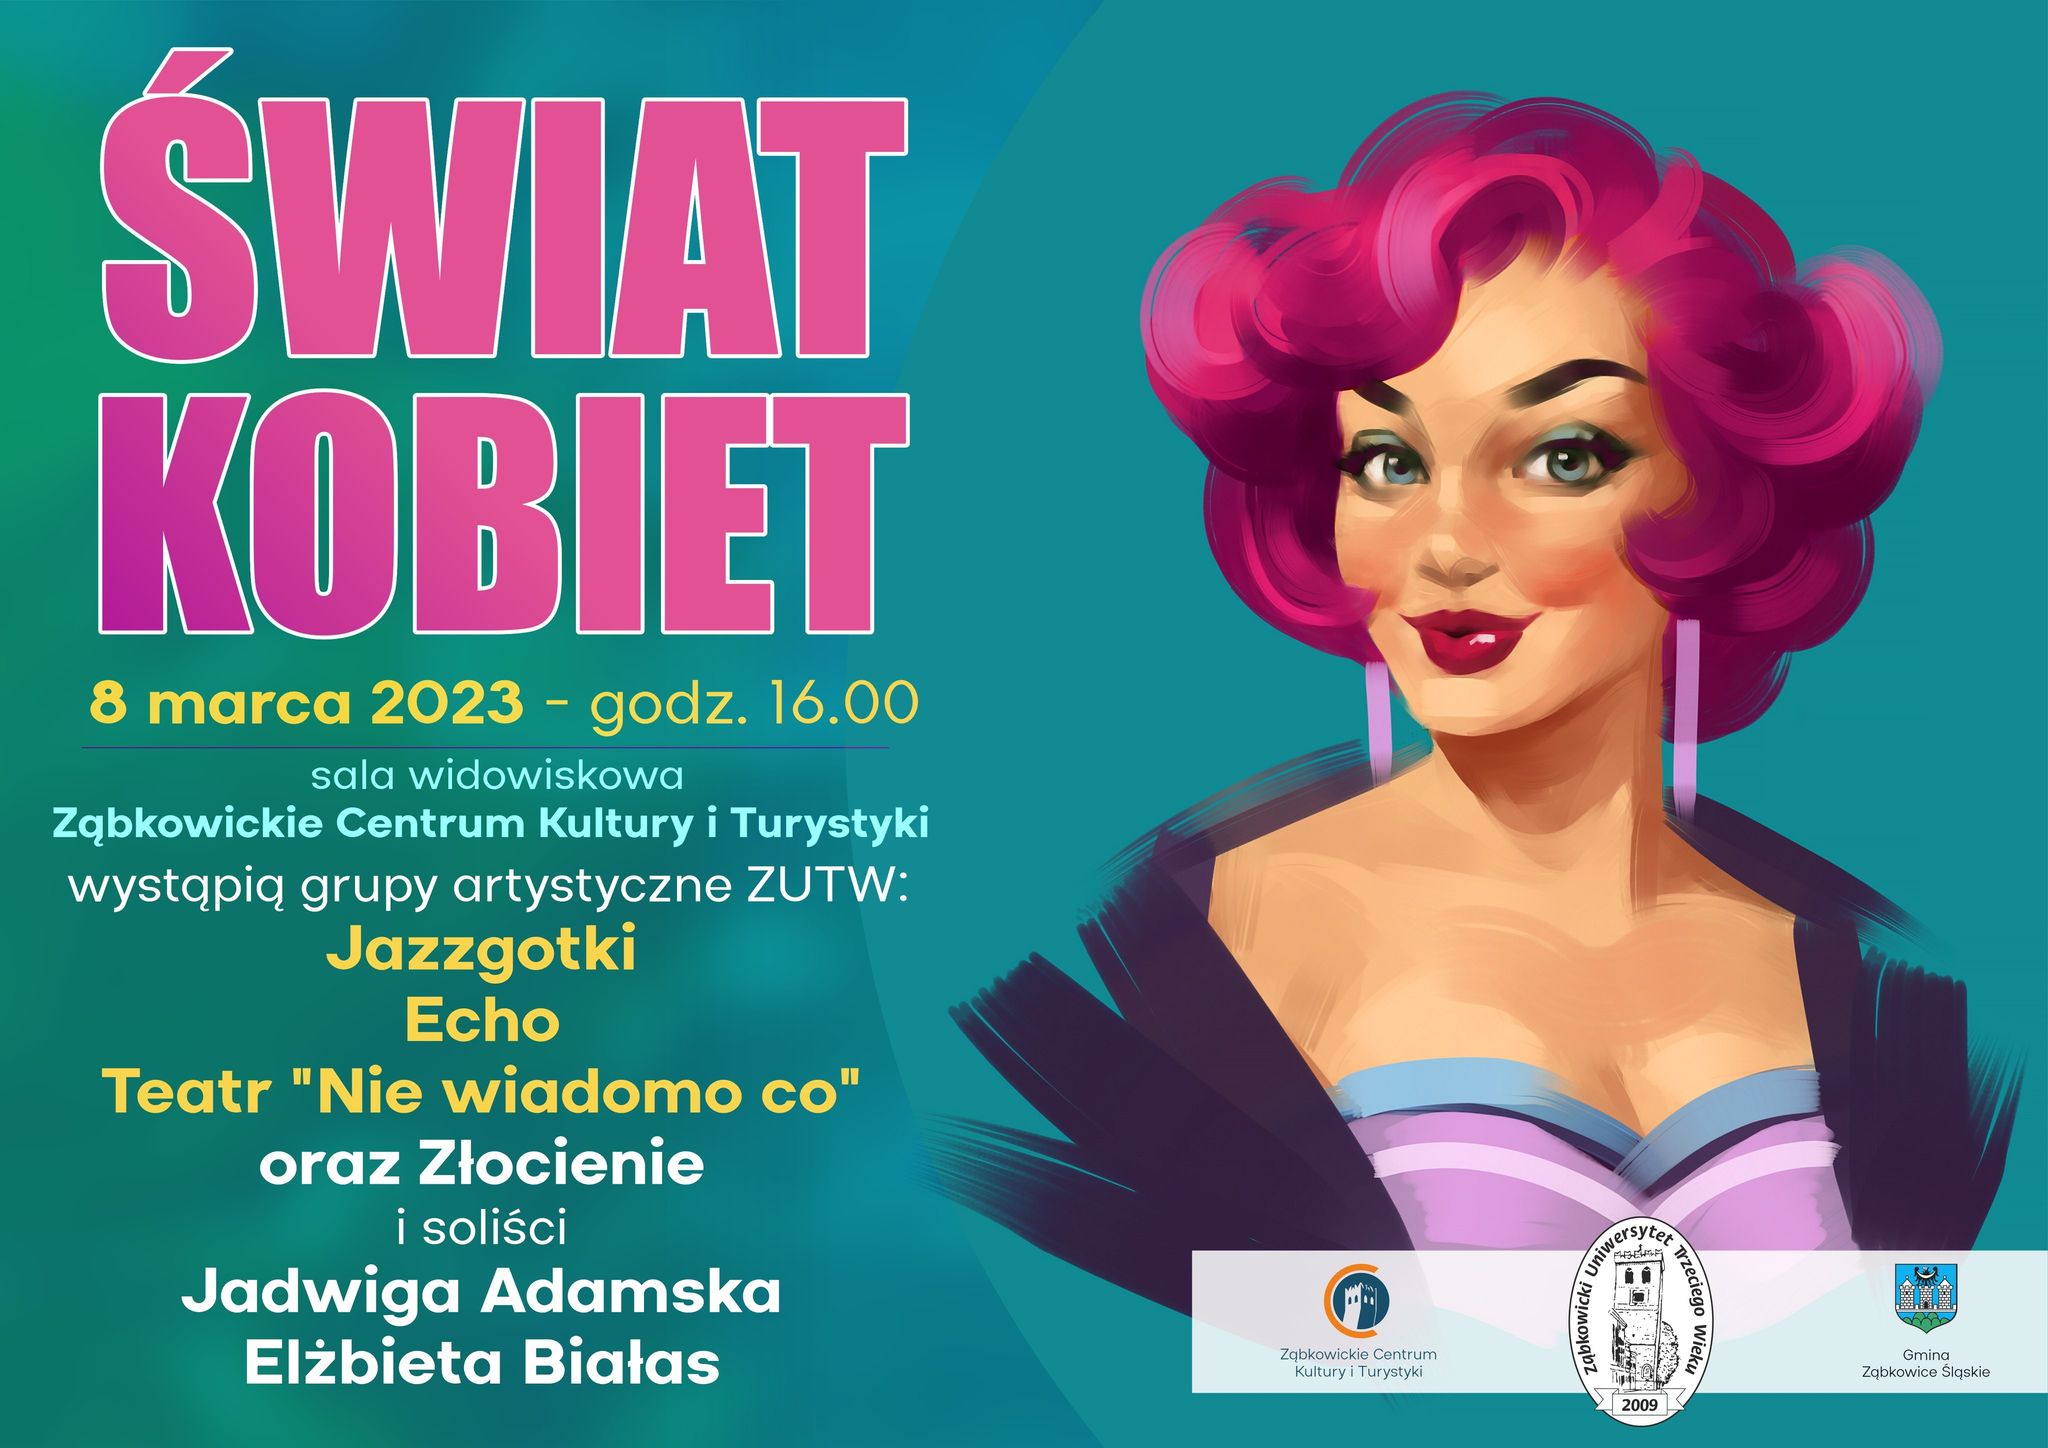 Plakat informujący o wydarzeniu "Świat Kobiet" 8 marca 2023 o godzinie 16:00 w Ząbkowickim Centrum Kultury i Turystyki.